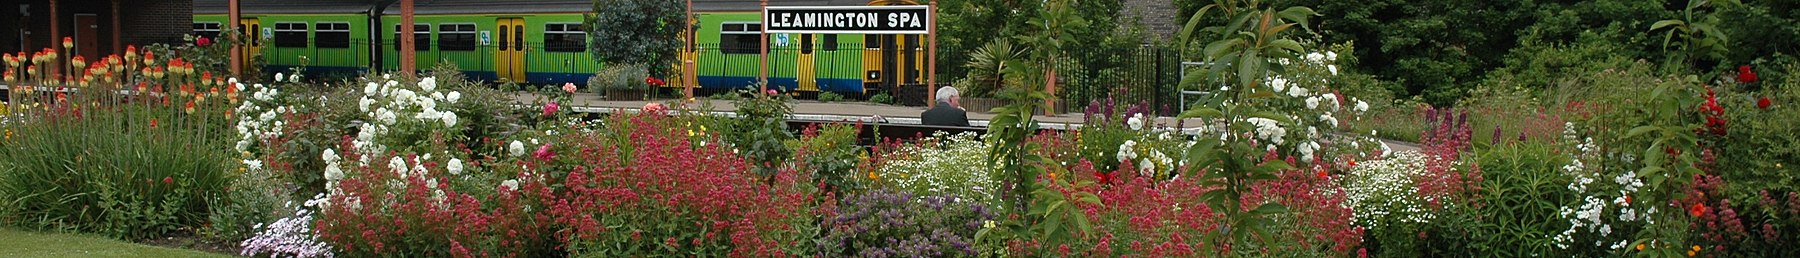 Leamington Spa banner banner Station Garden.JPG